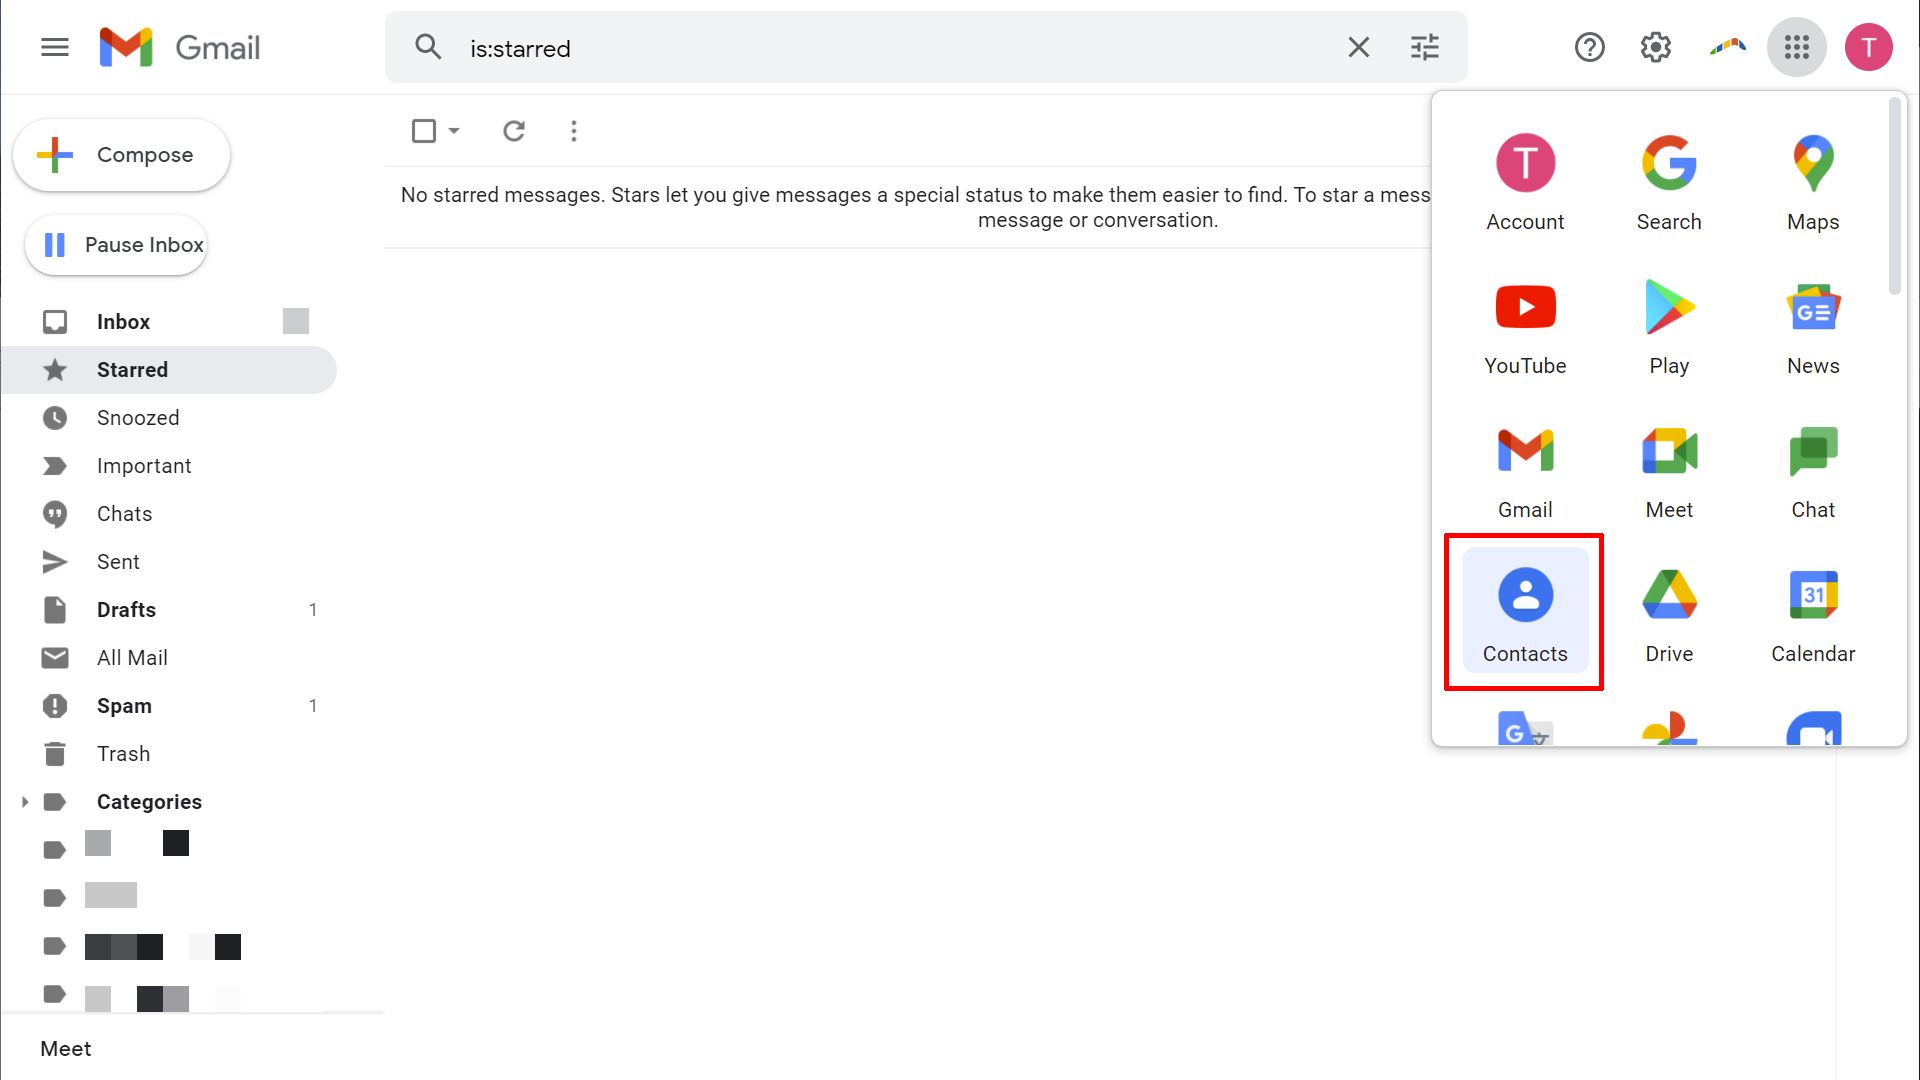 Interfaz de correo web de Gmail con menú de aplicaciones de Google ampliado.